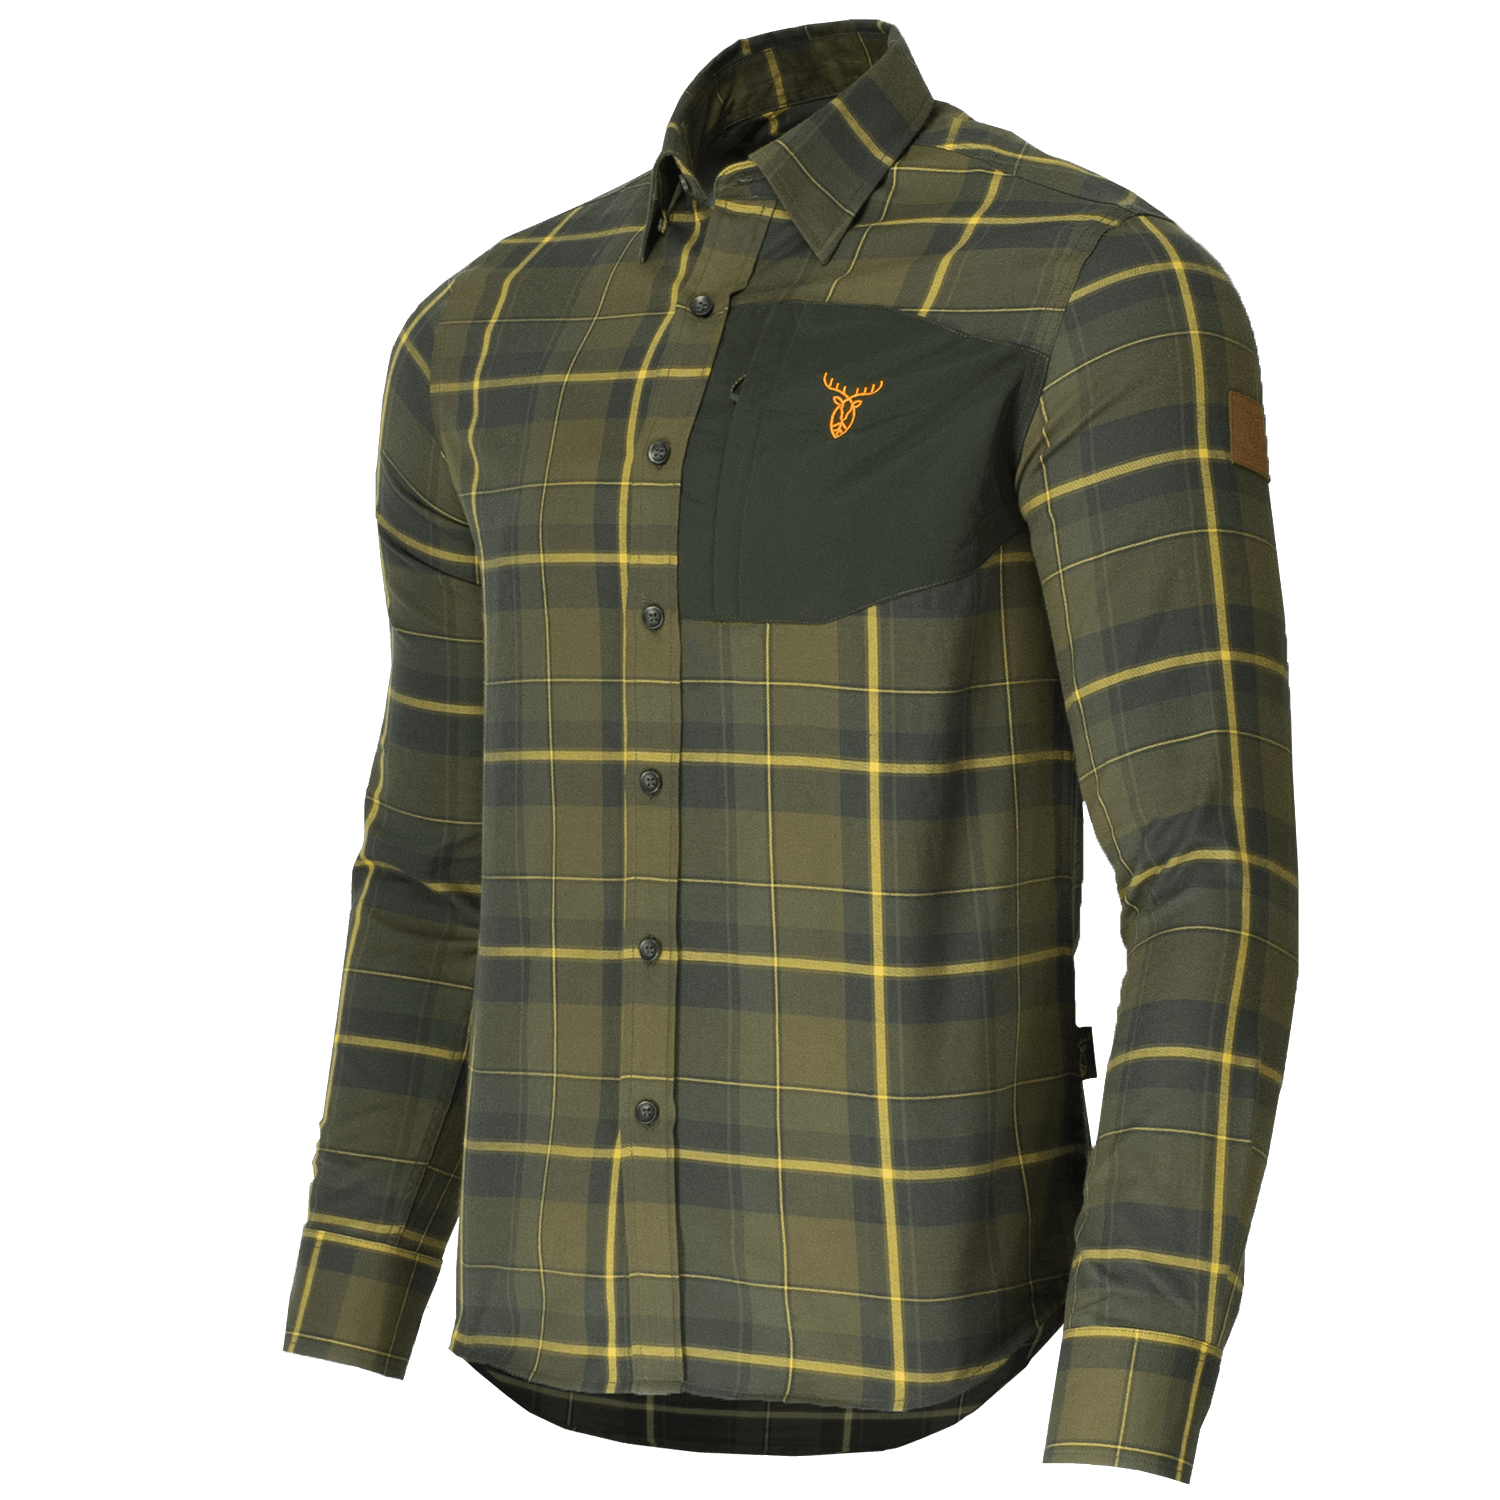 Pirscher Gear Field Shirt (Crsip Green) - Men's Hunting Clothing